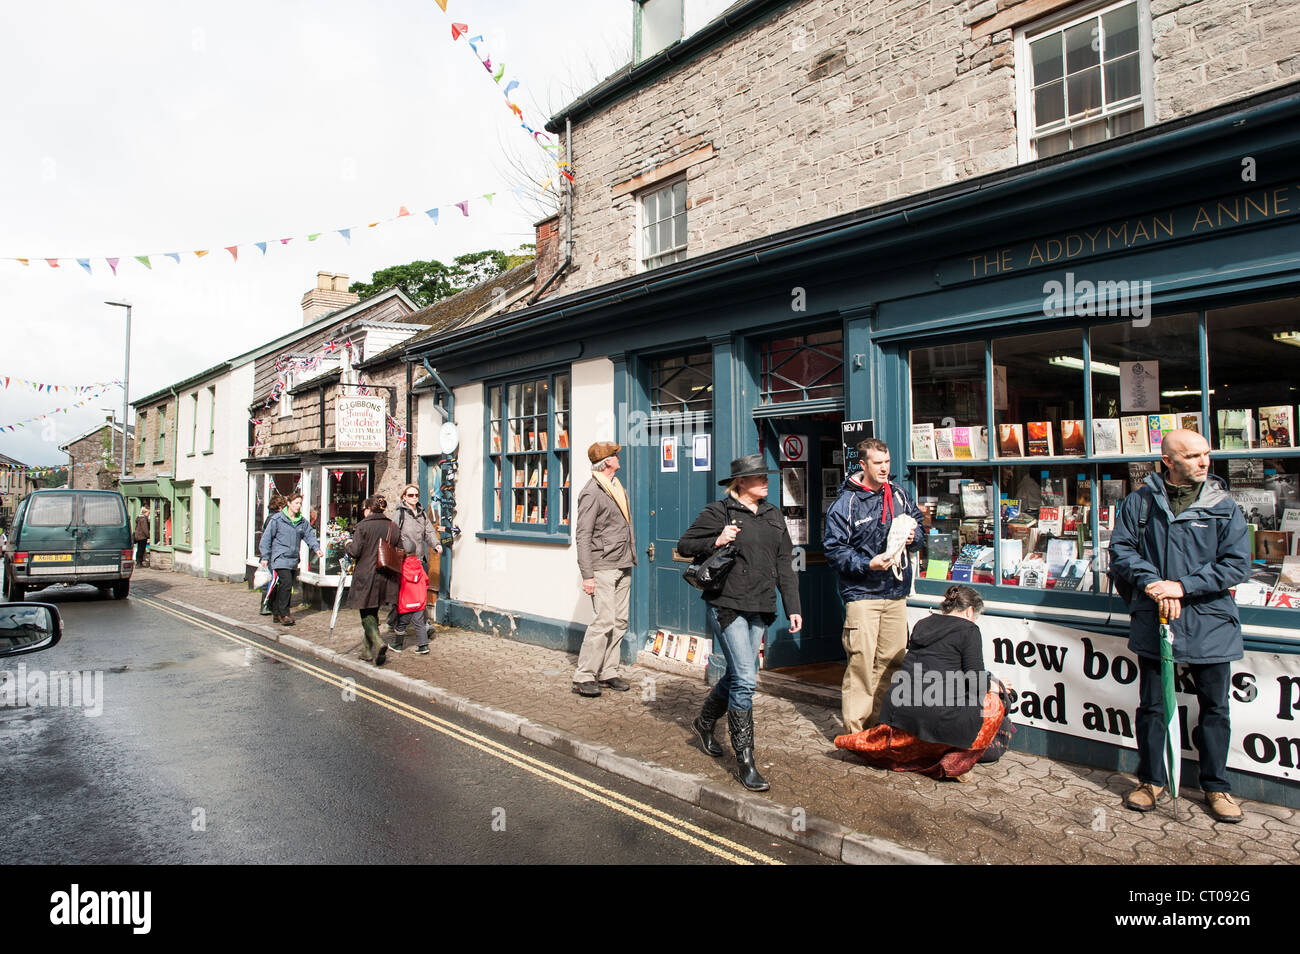 HAY-on-Wye, au Pays de Galles - Book Shop à Hay-on-Wye dans l'Est du pays de Galles. Décrite comme 'la ville de livres", il accueille chaque année un festival littéraire connu sous le nom de Hay Festival. Banque D'Images